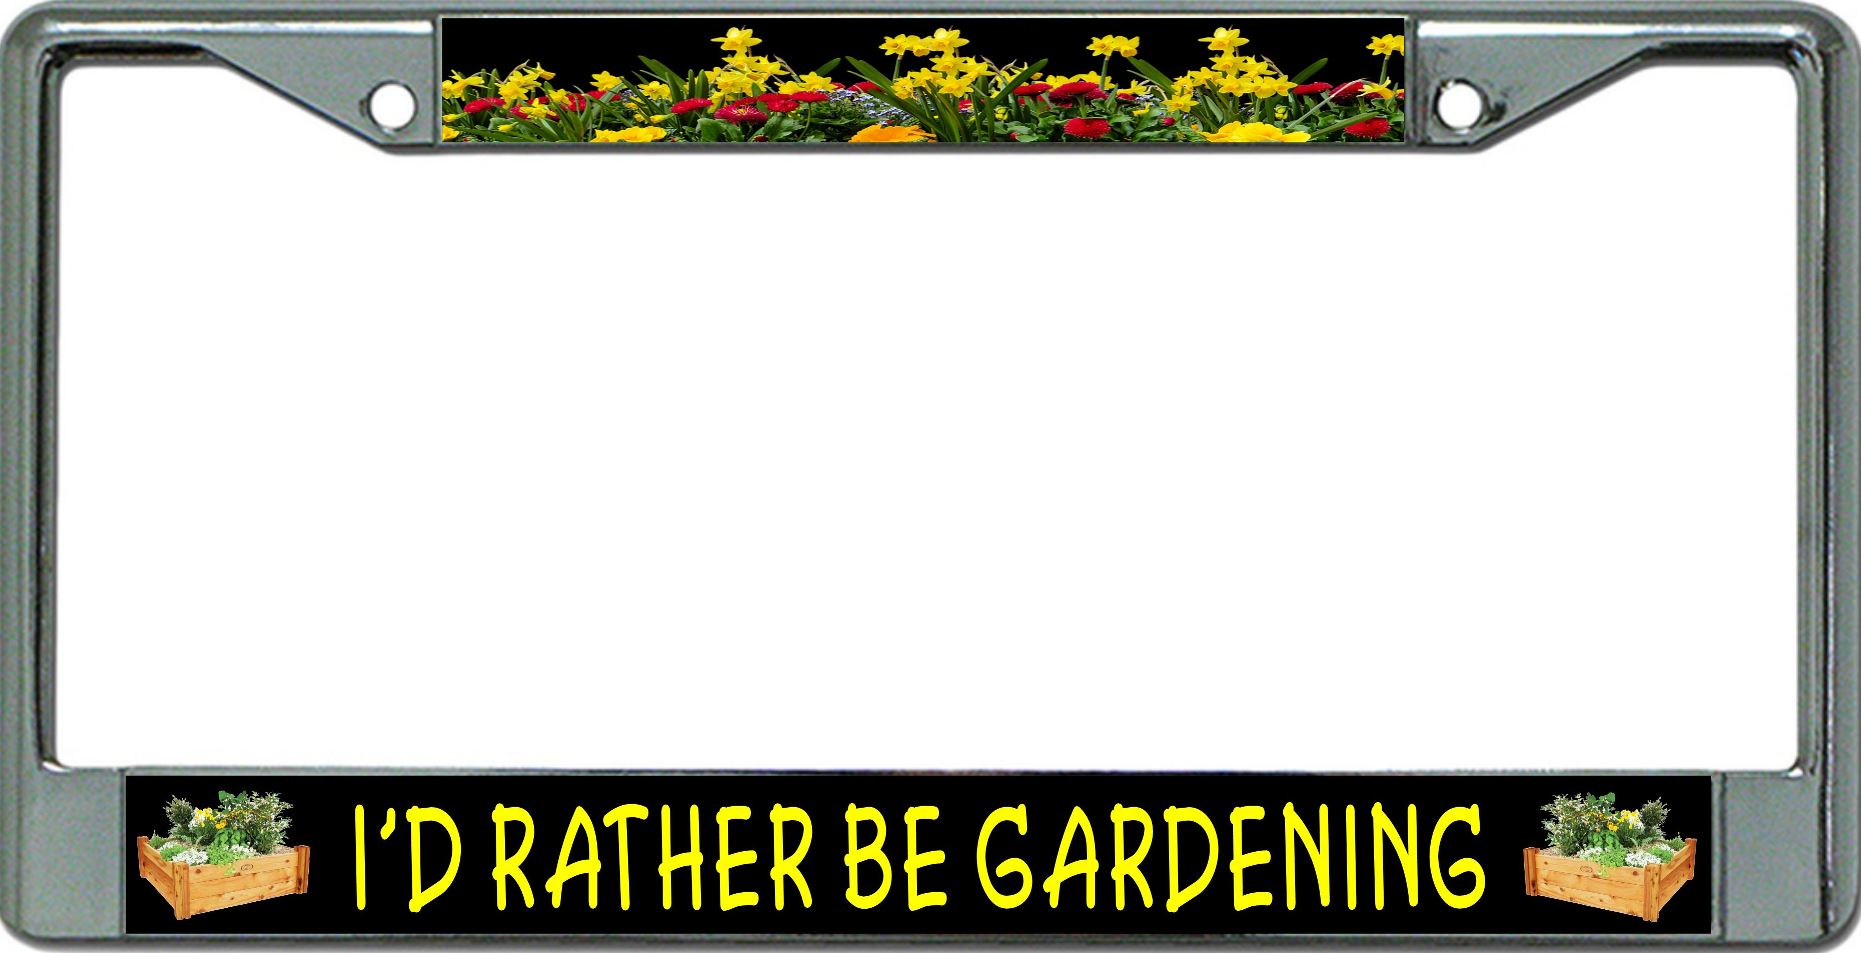 I'D Rather Be Gardening Chrome License Plate FRAME